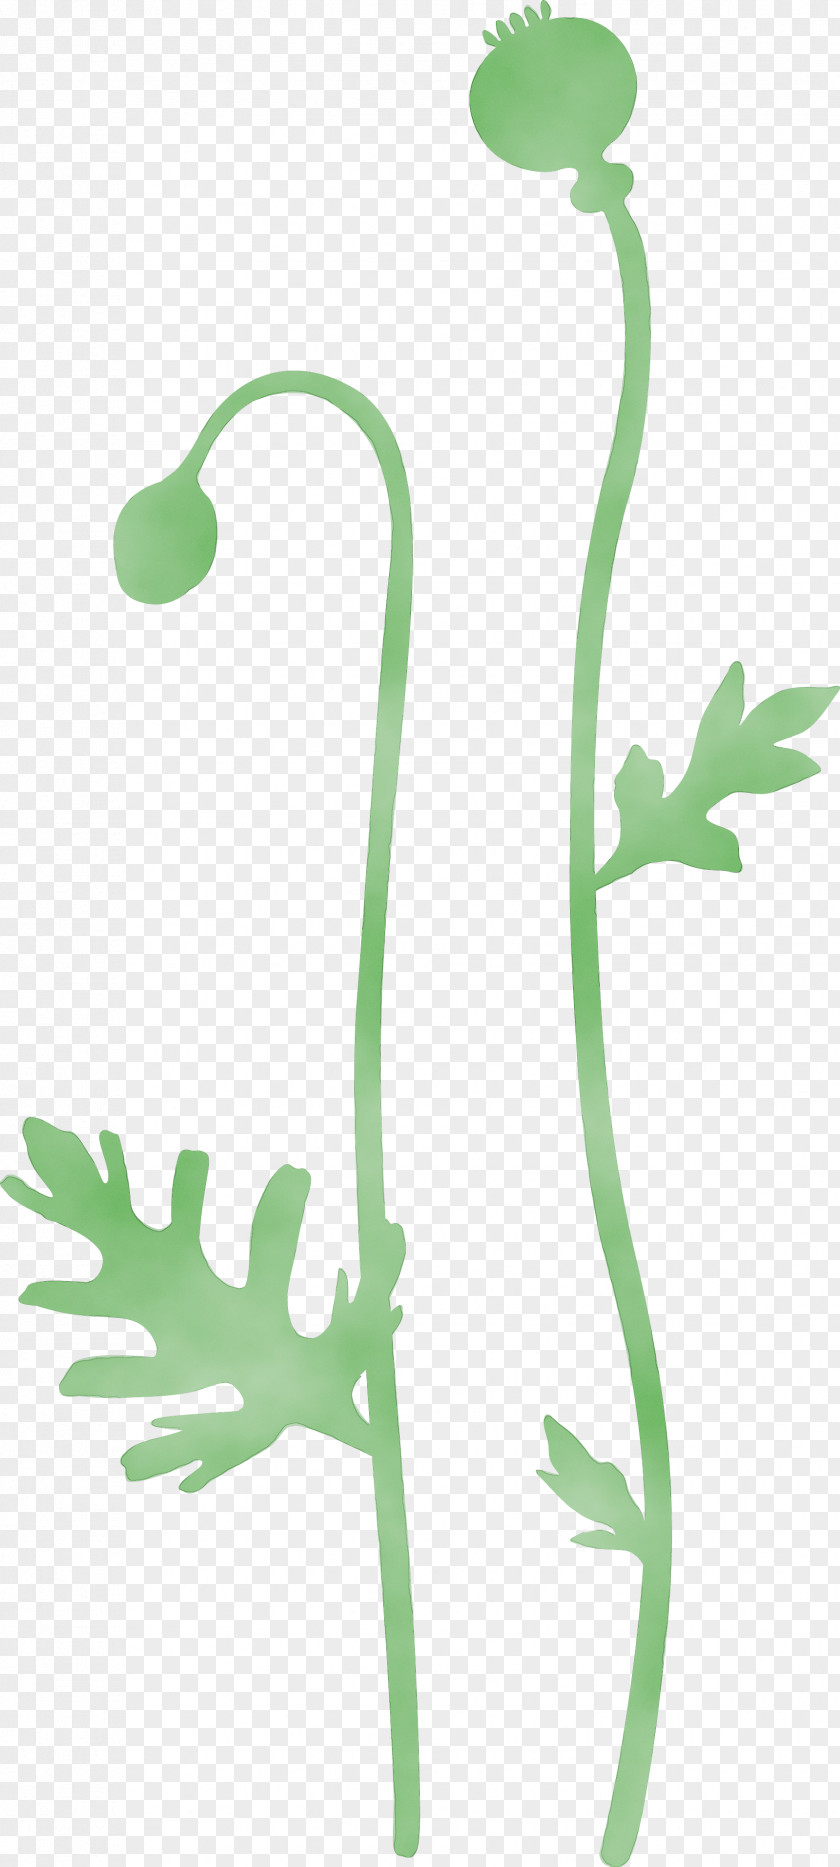 Plant Stem Flower Pedicel Vascular PNG